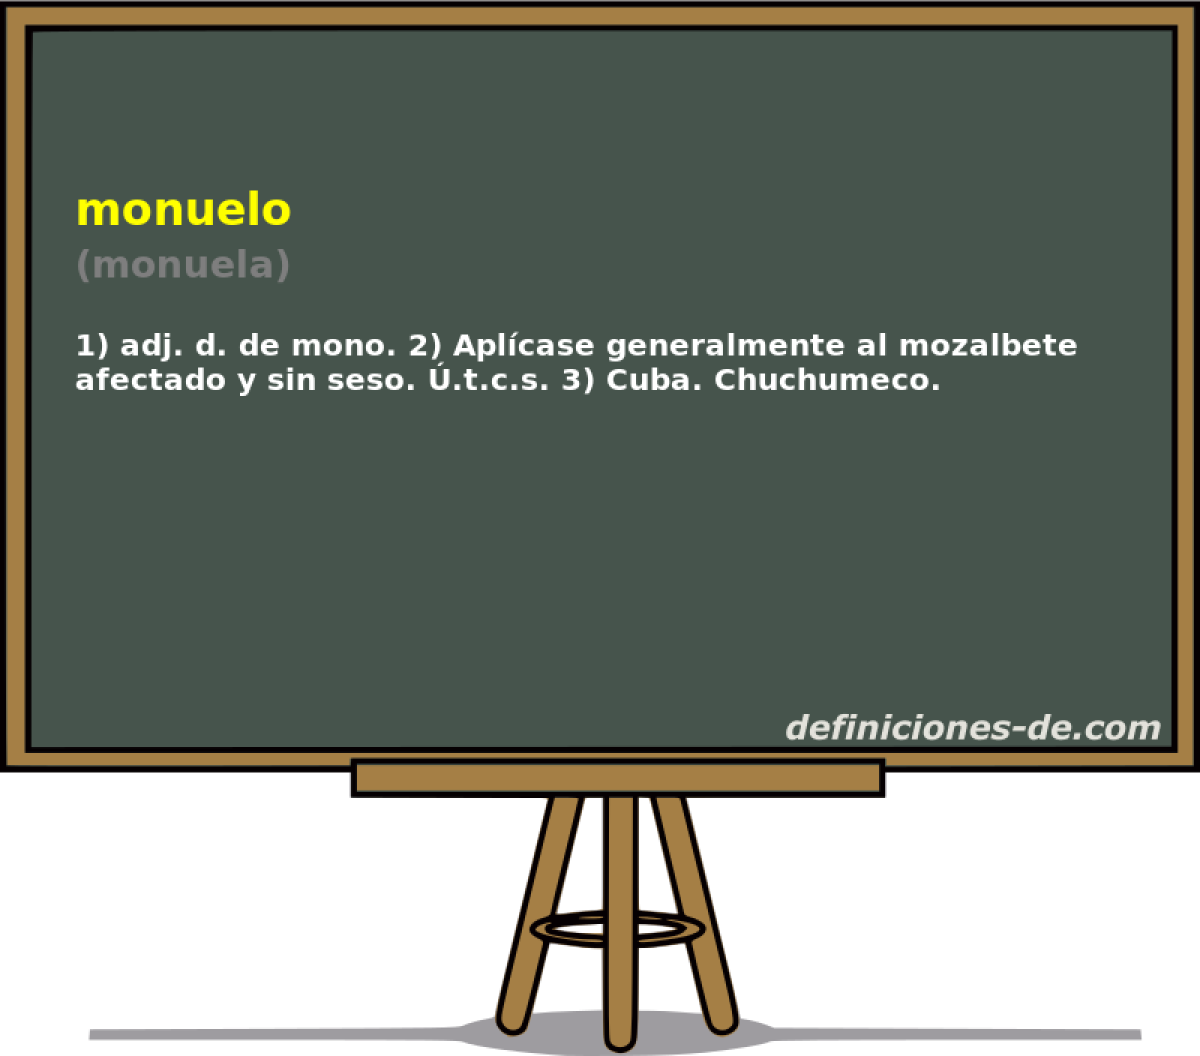 monuelo (monuela)